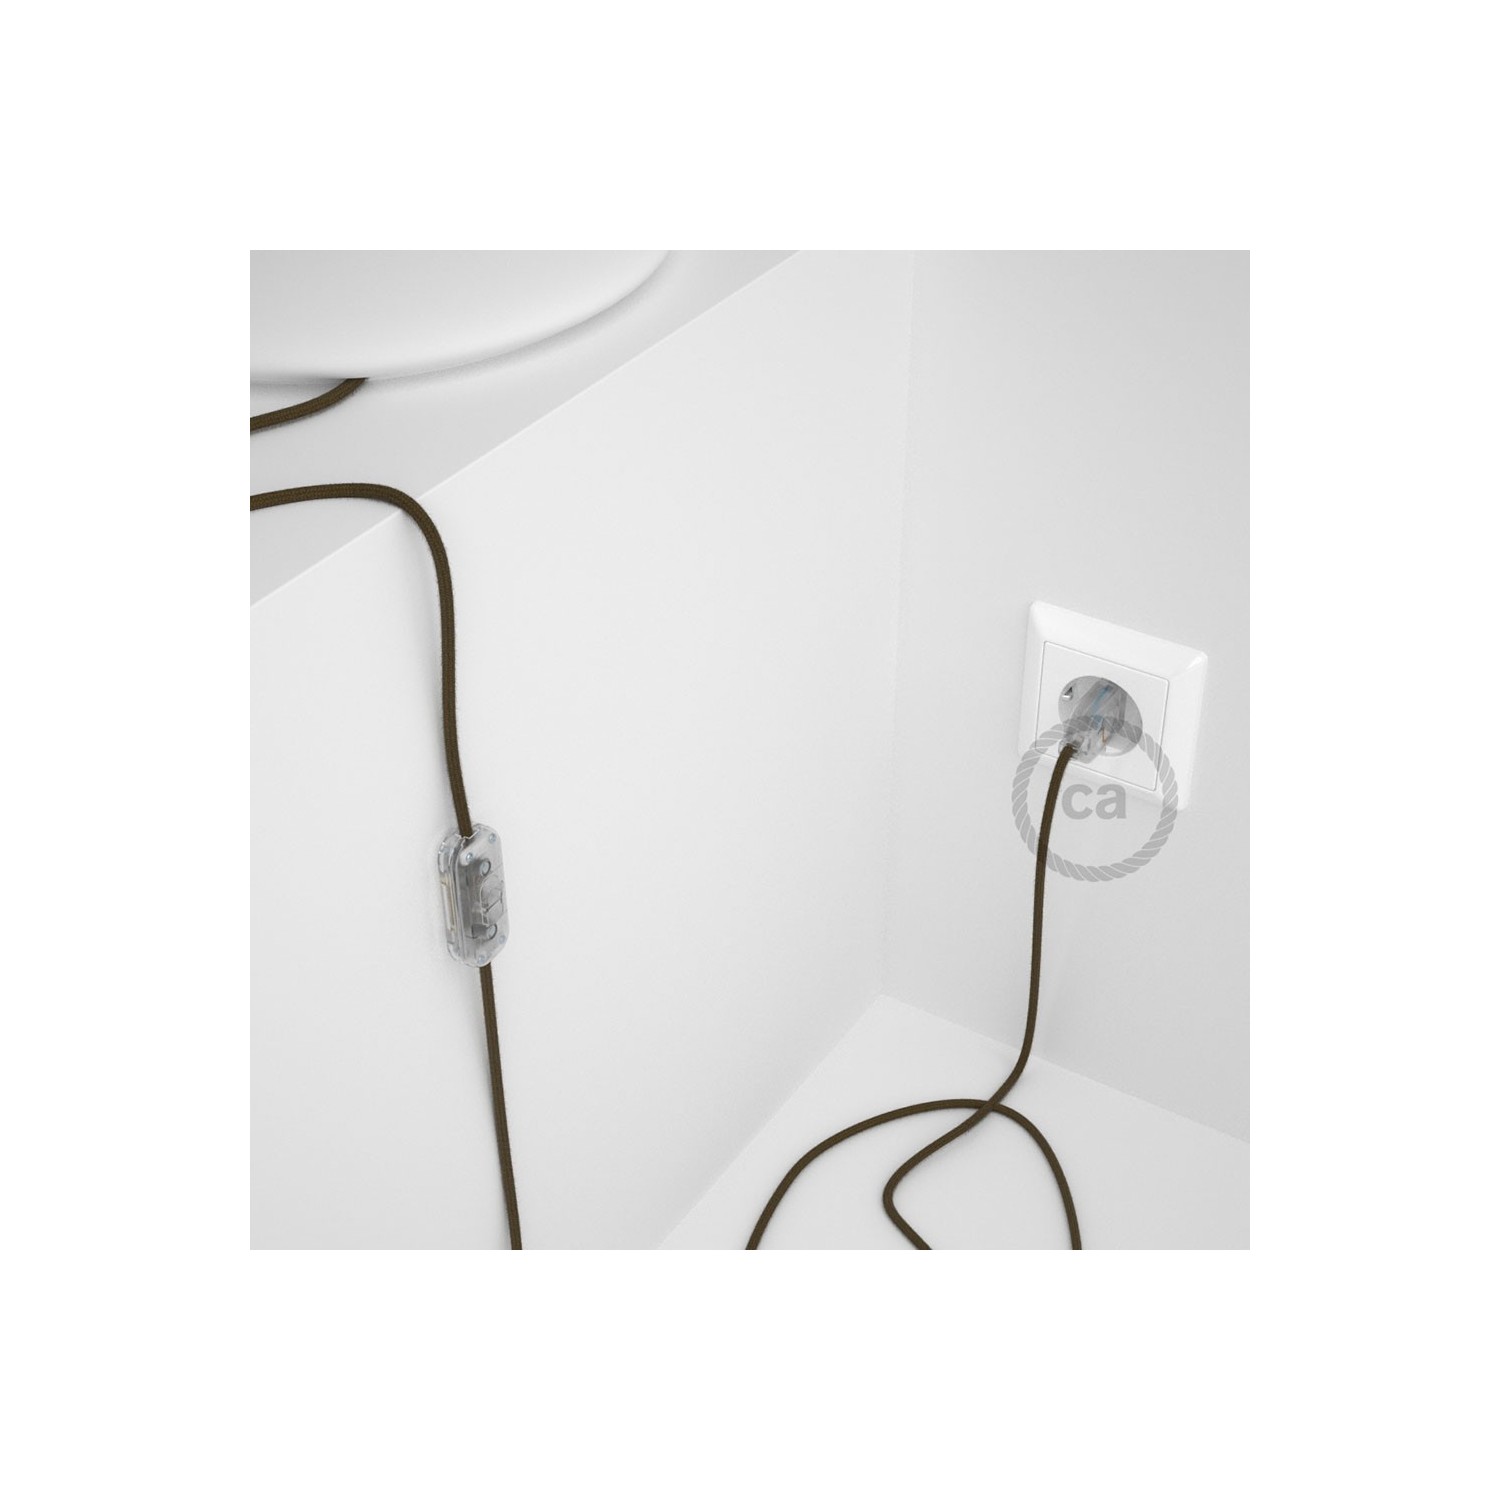 Cableado para lámpara, cable RC13 Algodón Marrón 1,8m. Elige tu el color de la clavija y del interruptor!